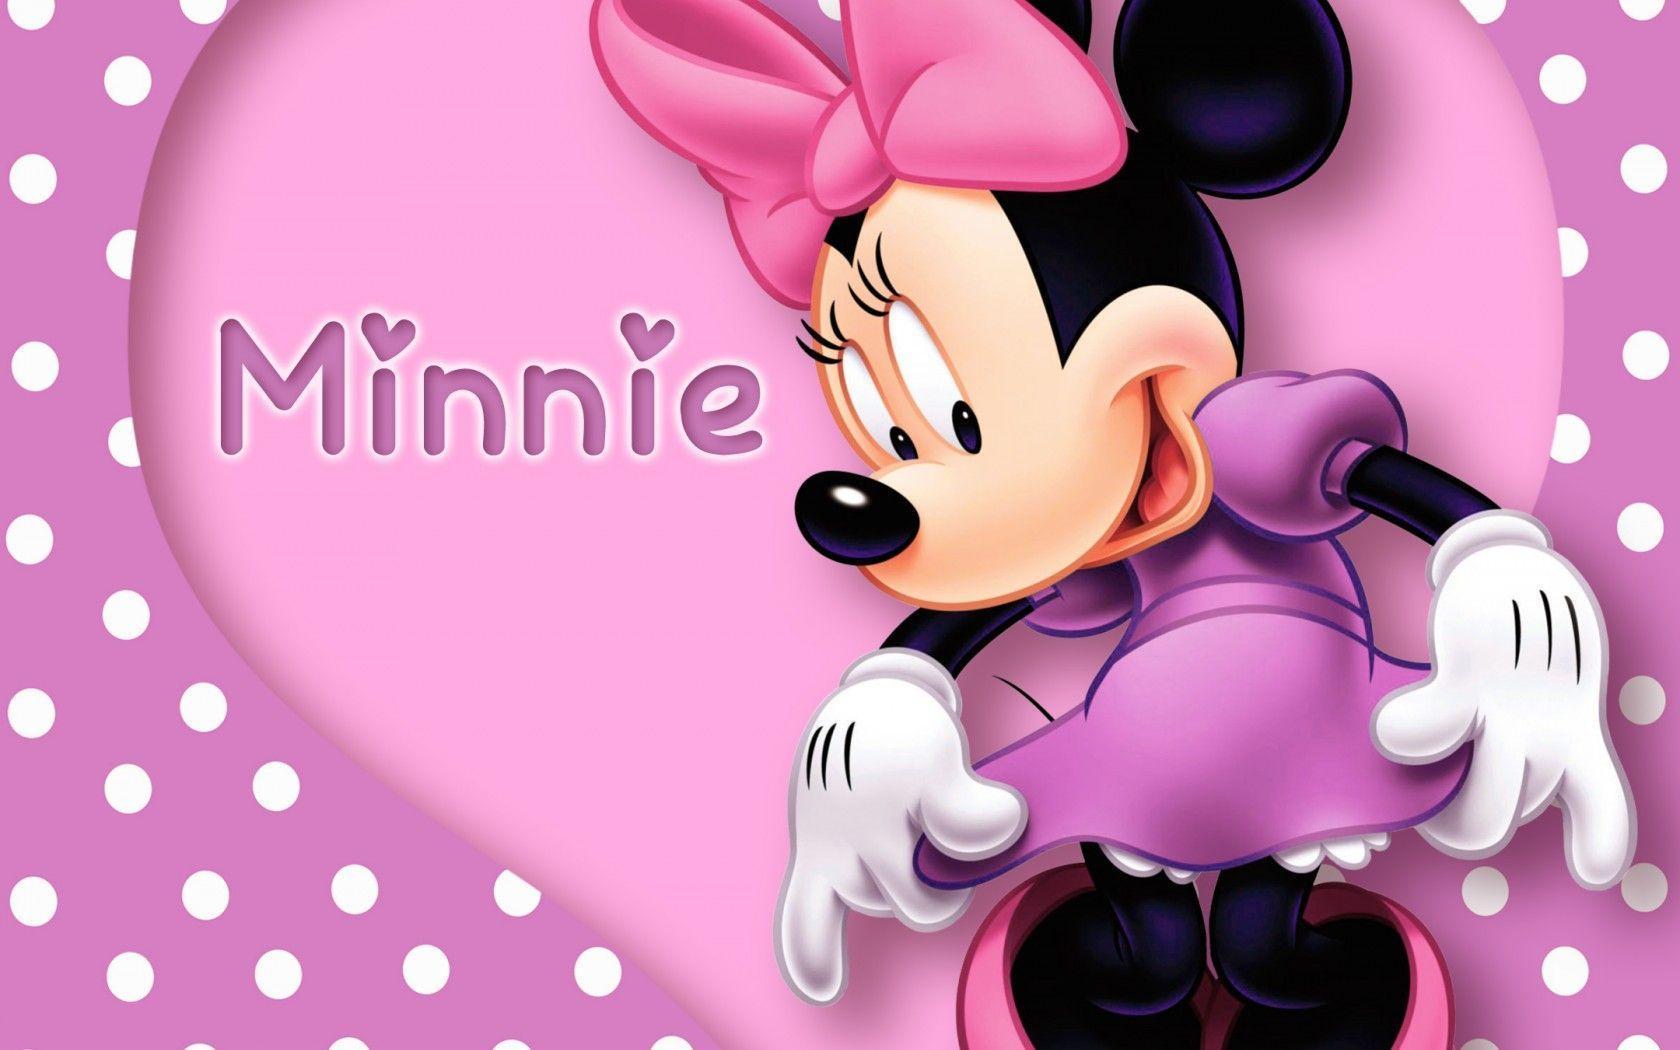 Best Minnie Mouse Wallpapers - Top Những Hình Ảnh Đẹp